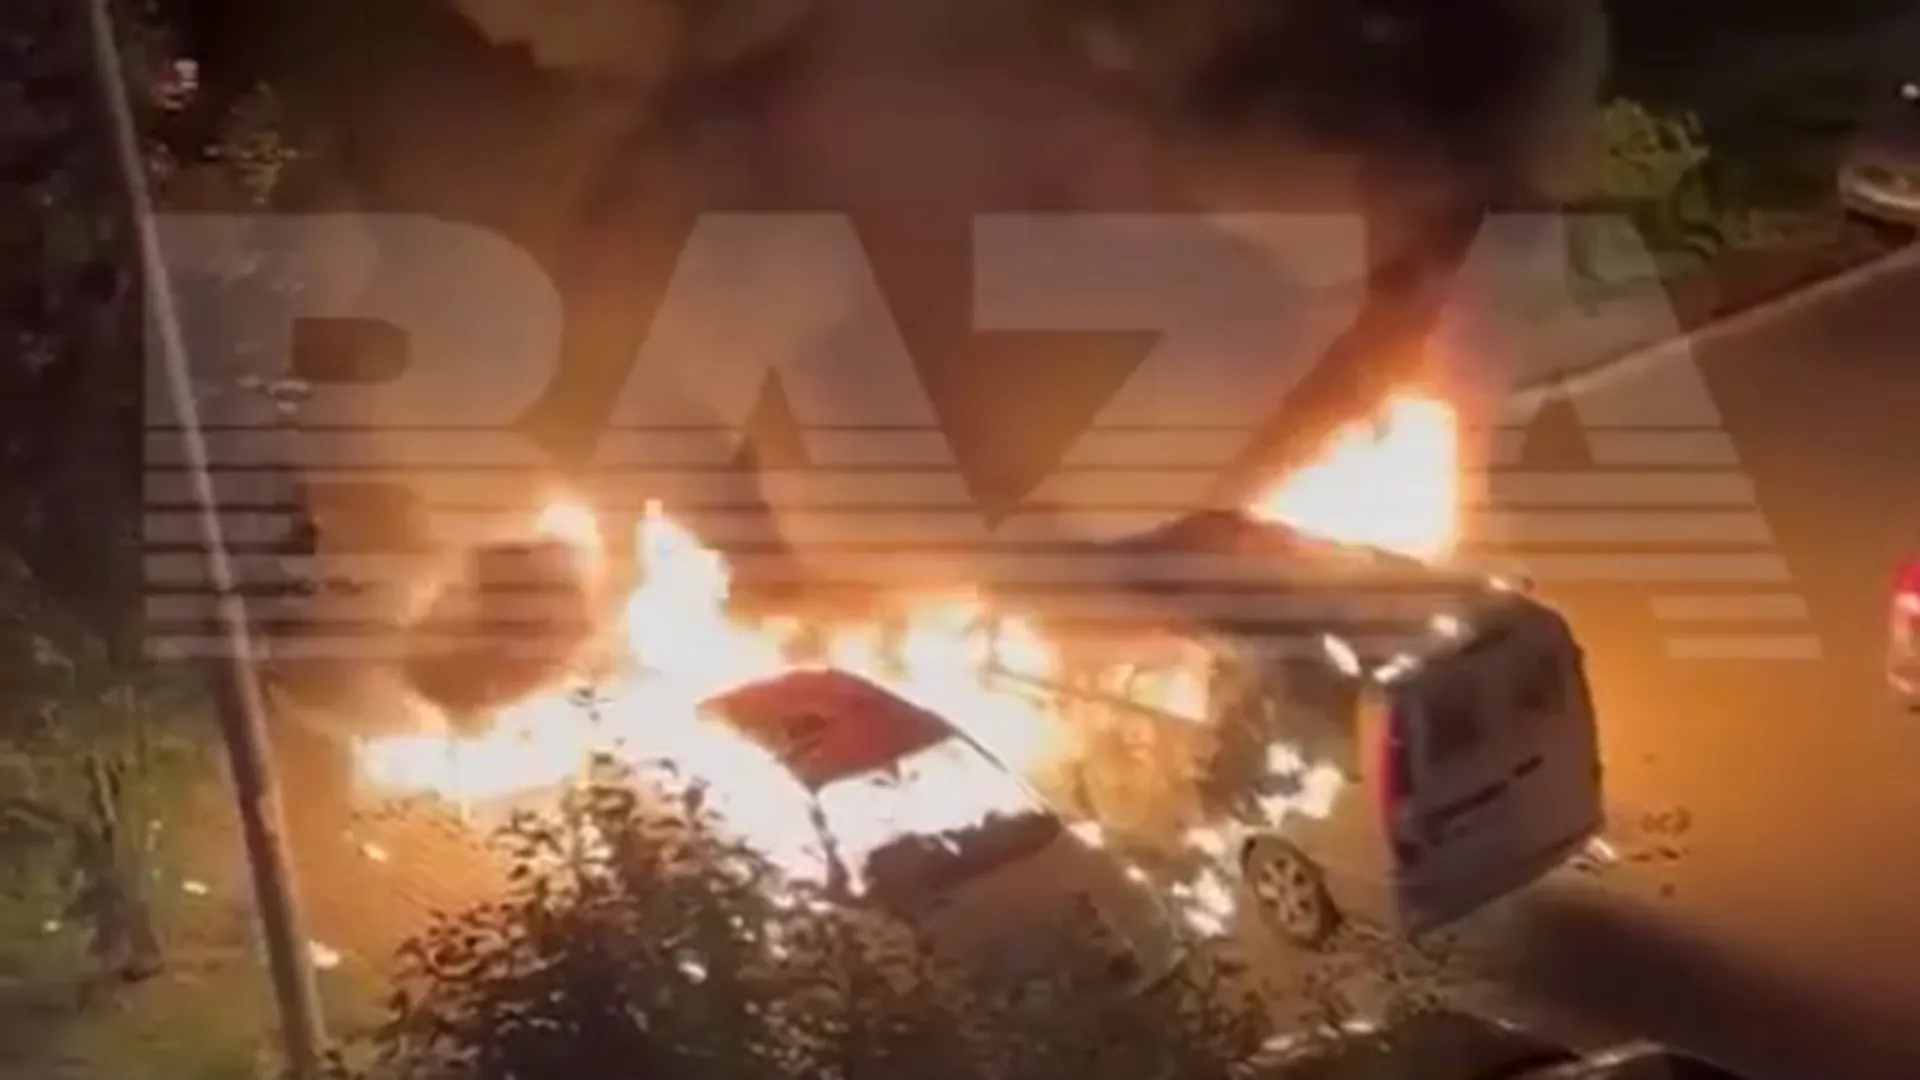 Baza: в Подмосковье сгорело 5 машин из‑за неудачного ремонта автомобиля